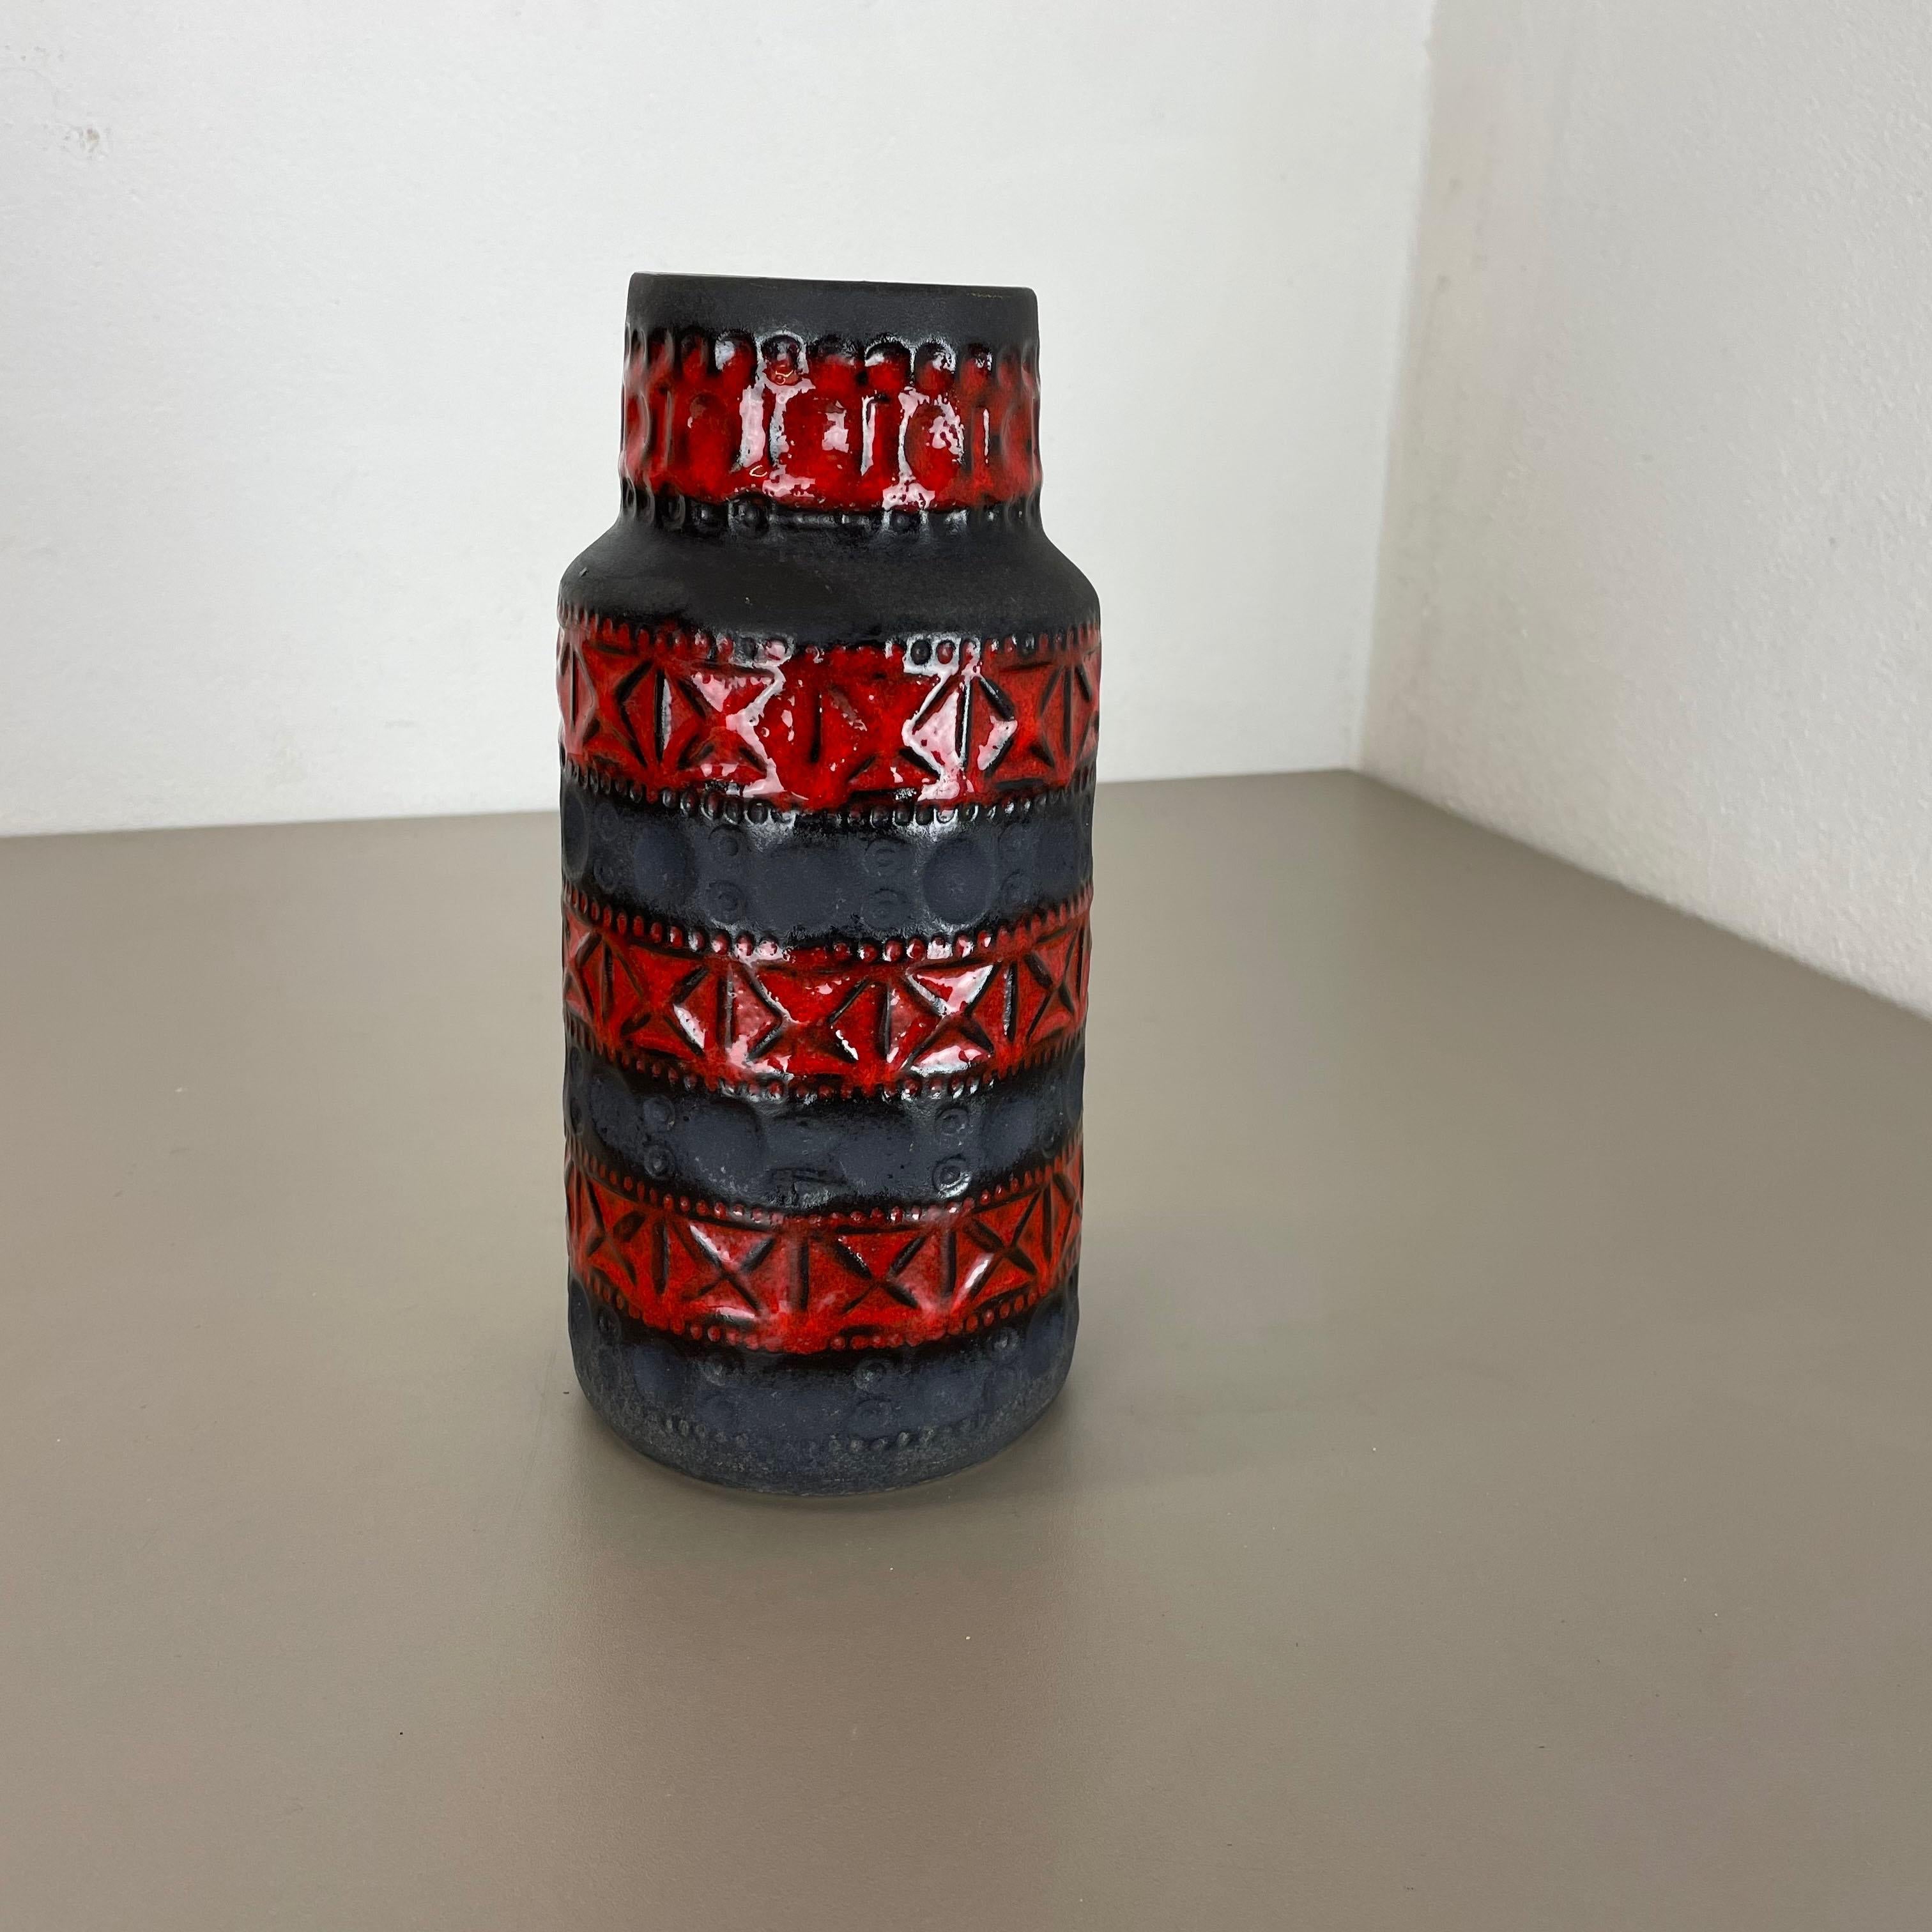 Artikel:

Vase aus Keramik


Produzent:

BAY Ceramic, Deutschland



Jahrzehnt:

1970s



Beschreibung:

Original Vintage Keramikvase aus den 1970er Jahren, hergestellt in Deutschland. Hochwertige deutsche Produktion mit schöner